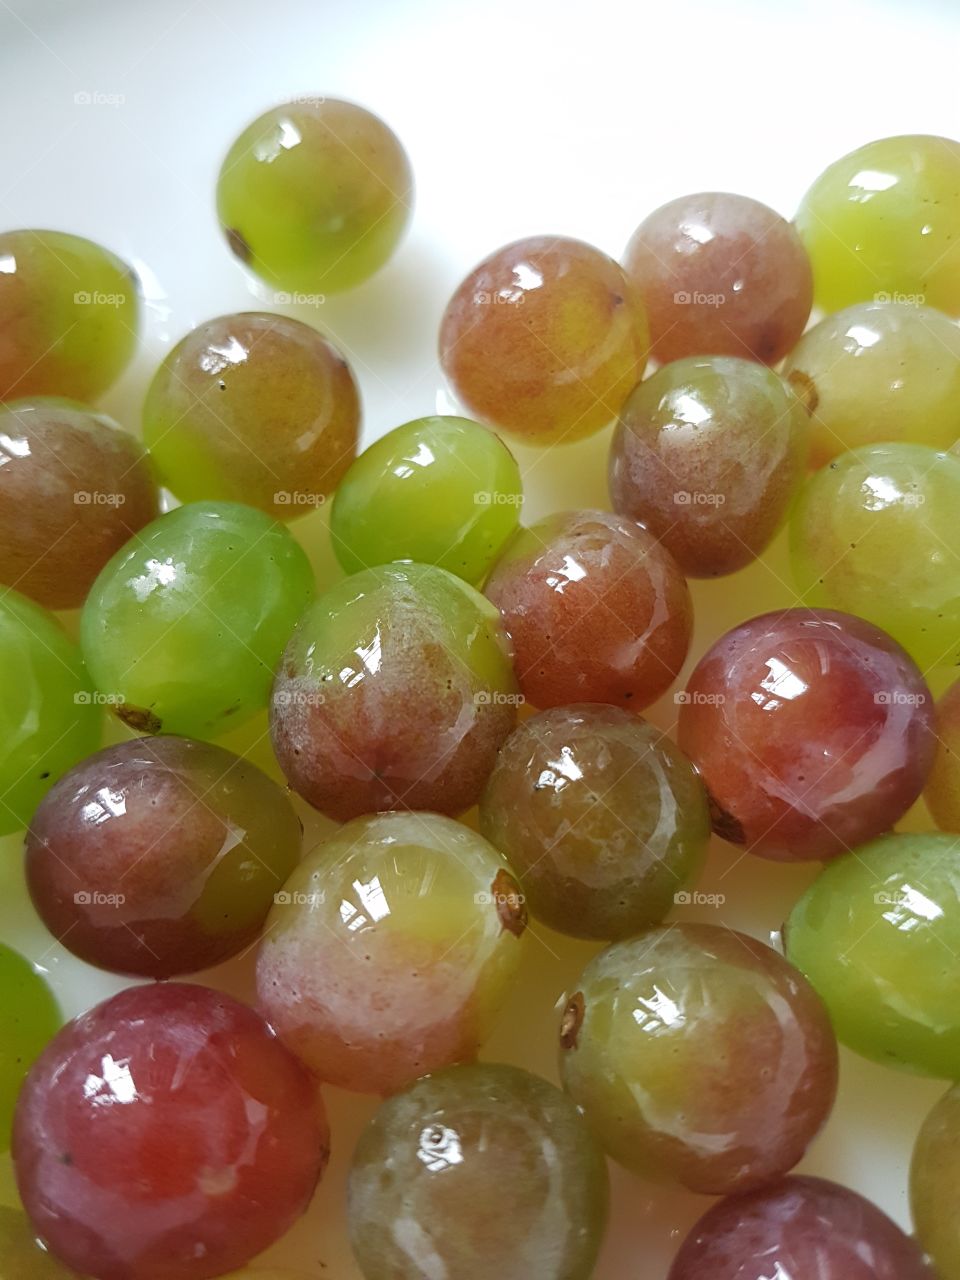 Shades of shinning grapes